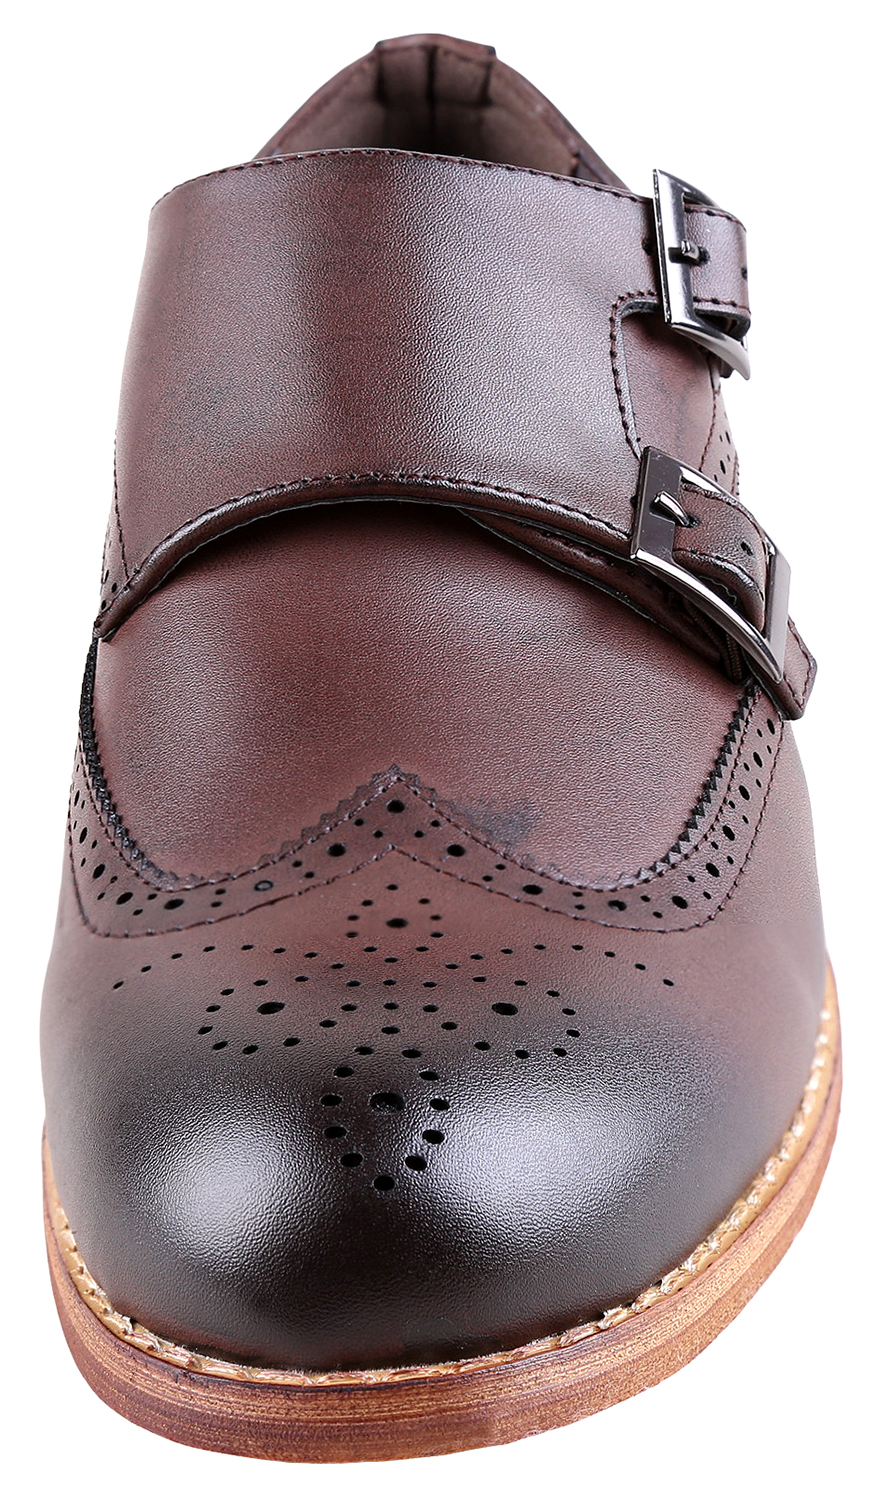 Urban Fox Allen Men's Dress Shoe | Double Monk Strap | Brogue | Wingtip Shoes for Men | Dark Brown 12 M US - image 3 of 7